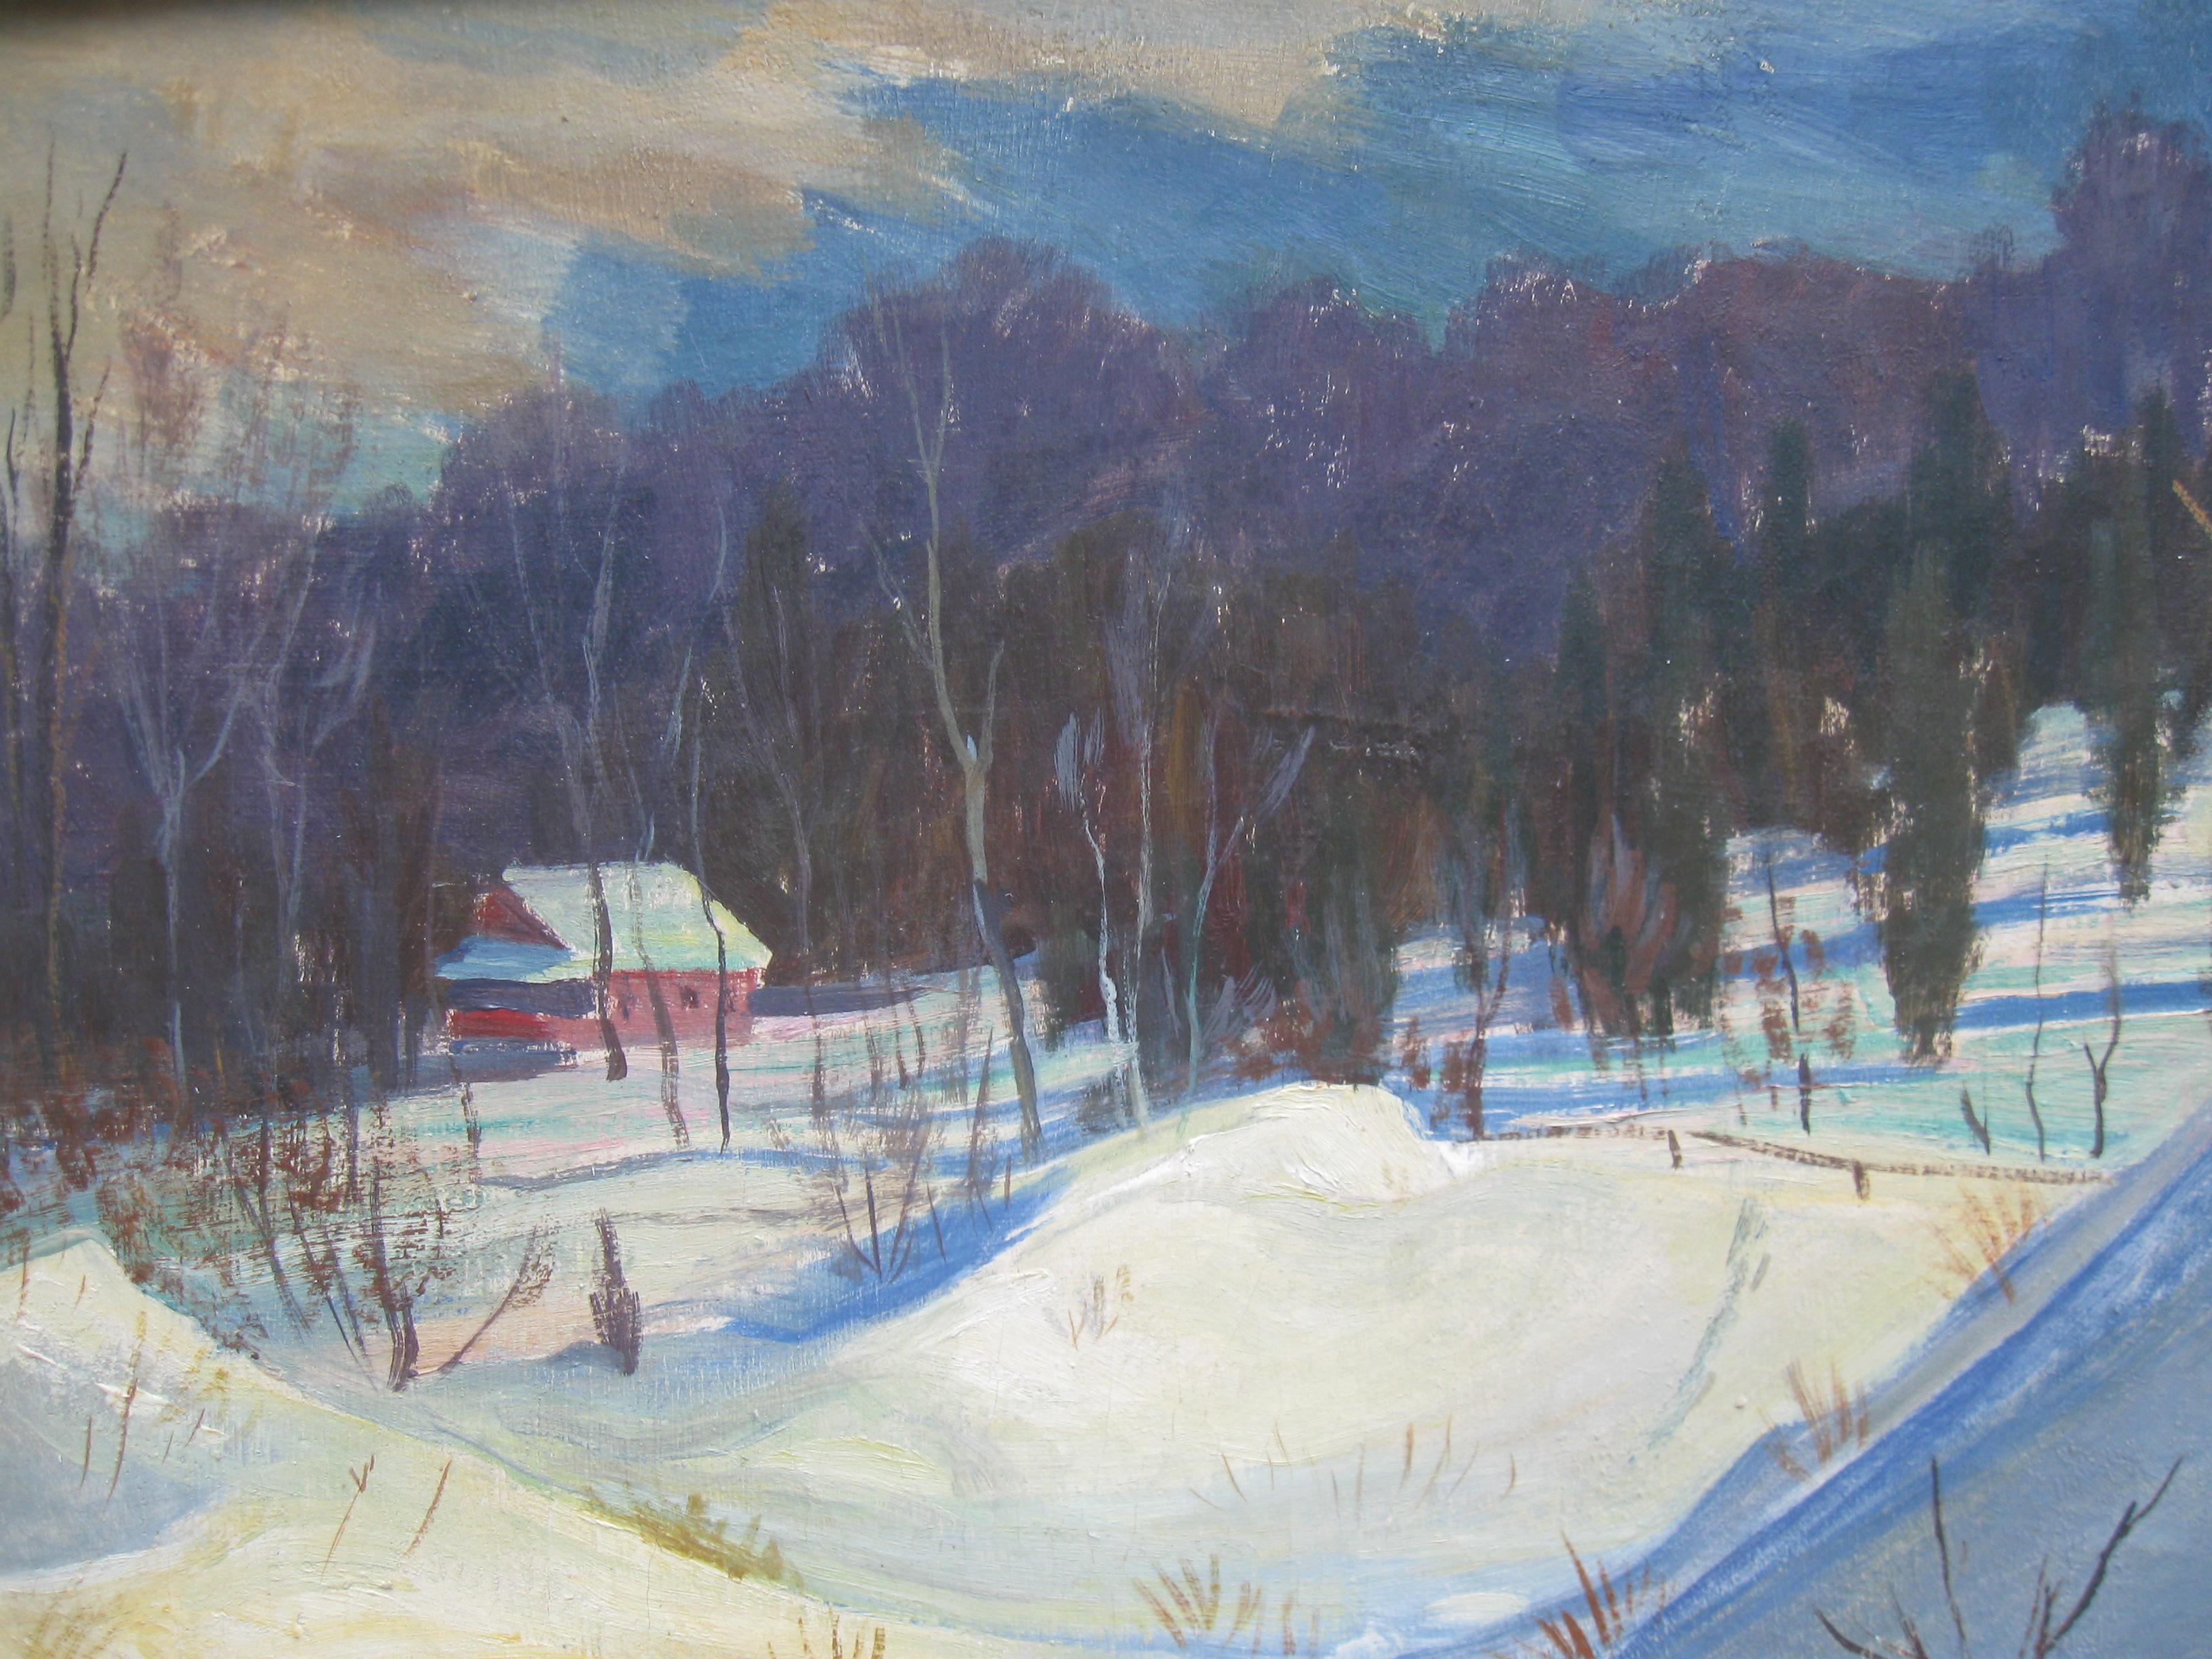 Schneedriften in einer bewaldeten Landschaft, Öl auf Leinwand, ca. 1950er Jahre (Impressionismus), Painting, von Unknown